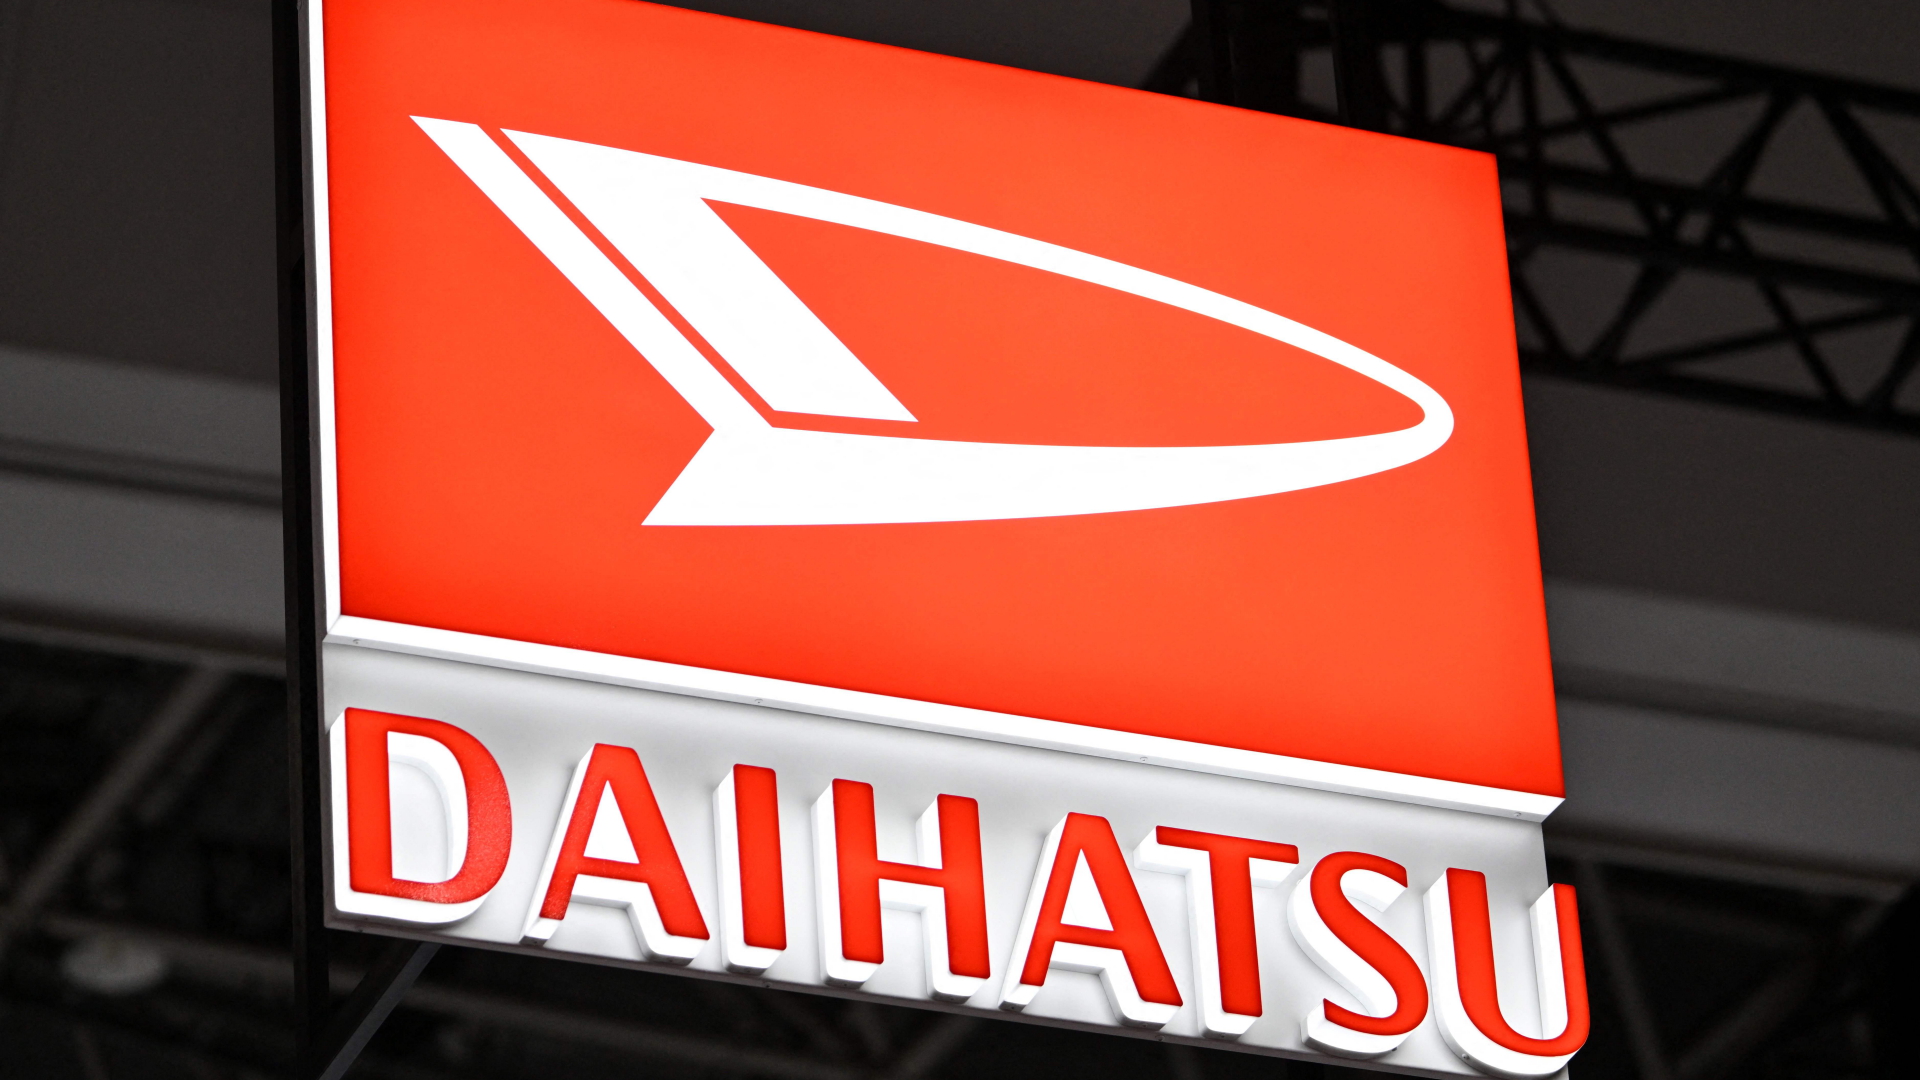 Das Logo von Daihatsu auf einem Aufsteller.